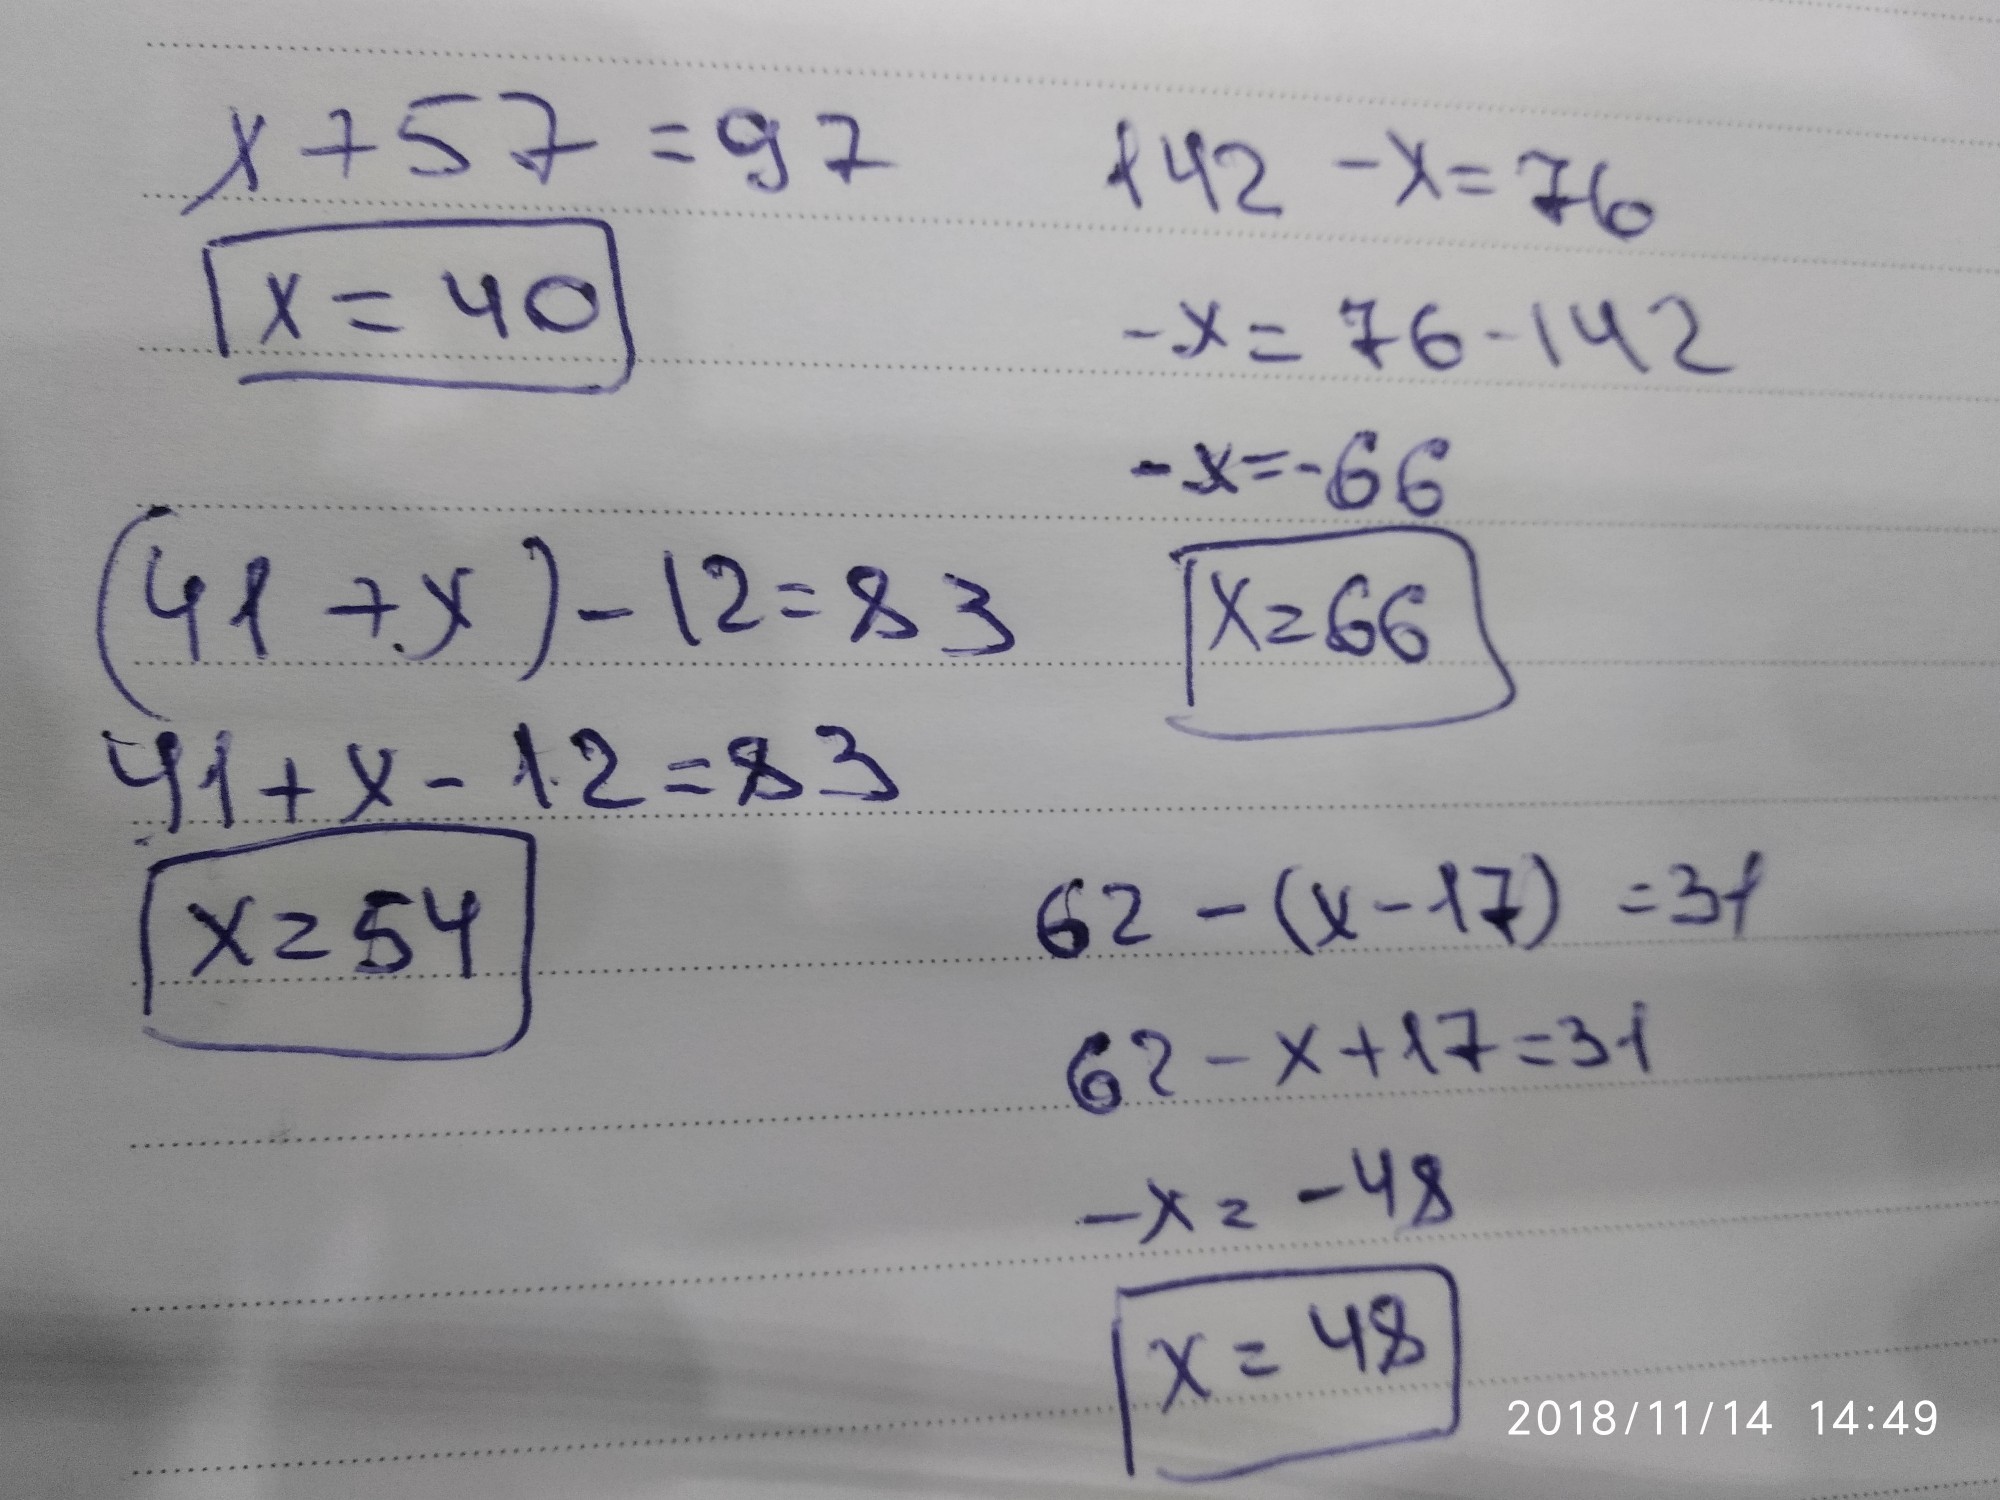 Решение уравнений 1 3 x 12. Уравнение 62-x=41. (41+Х) - 12=83 решение. 62-(Х-17)=31. Уравнение (41+x)-12=83.